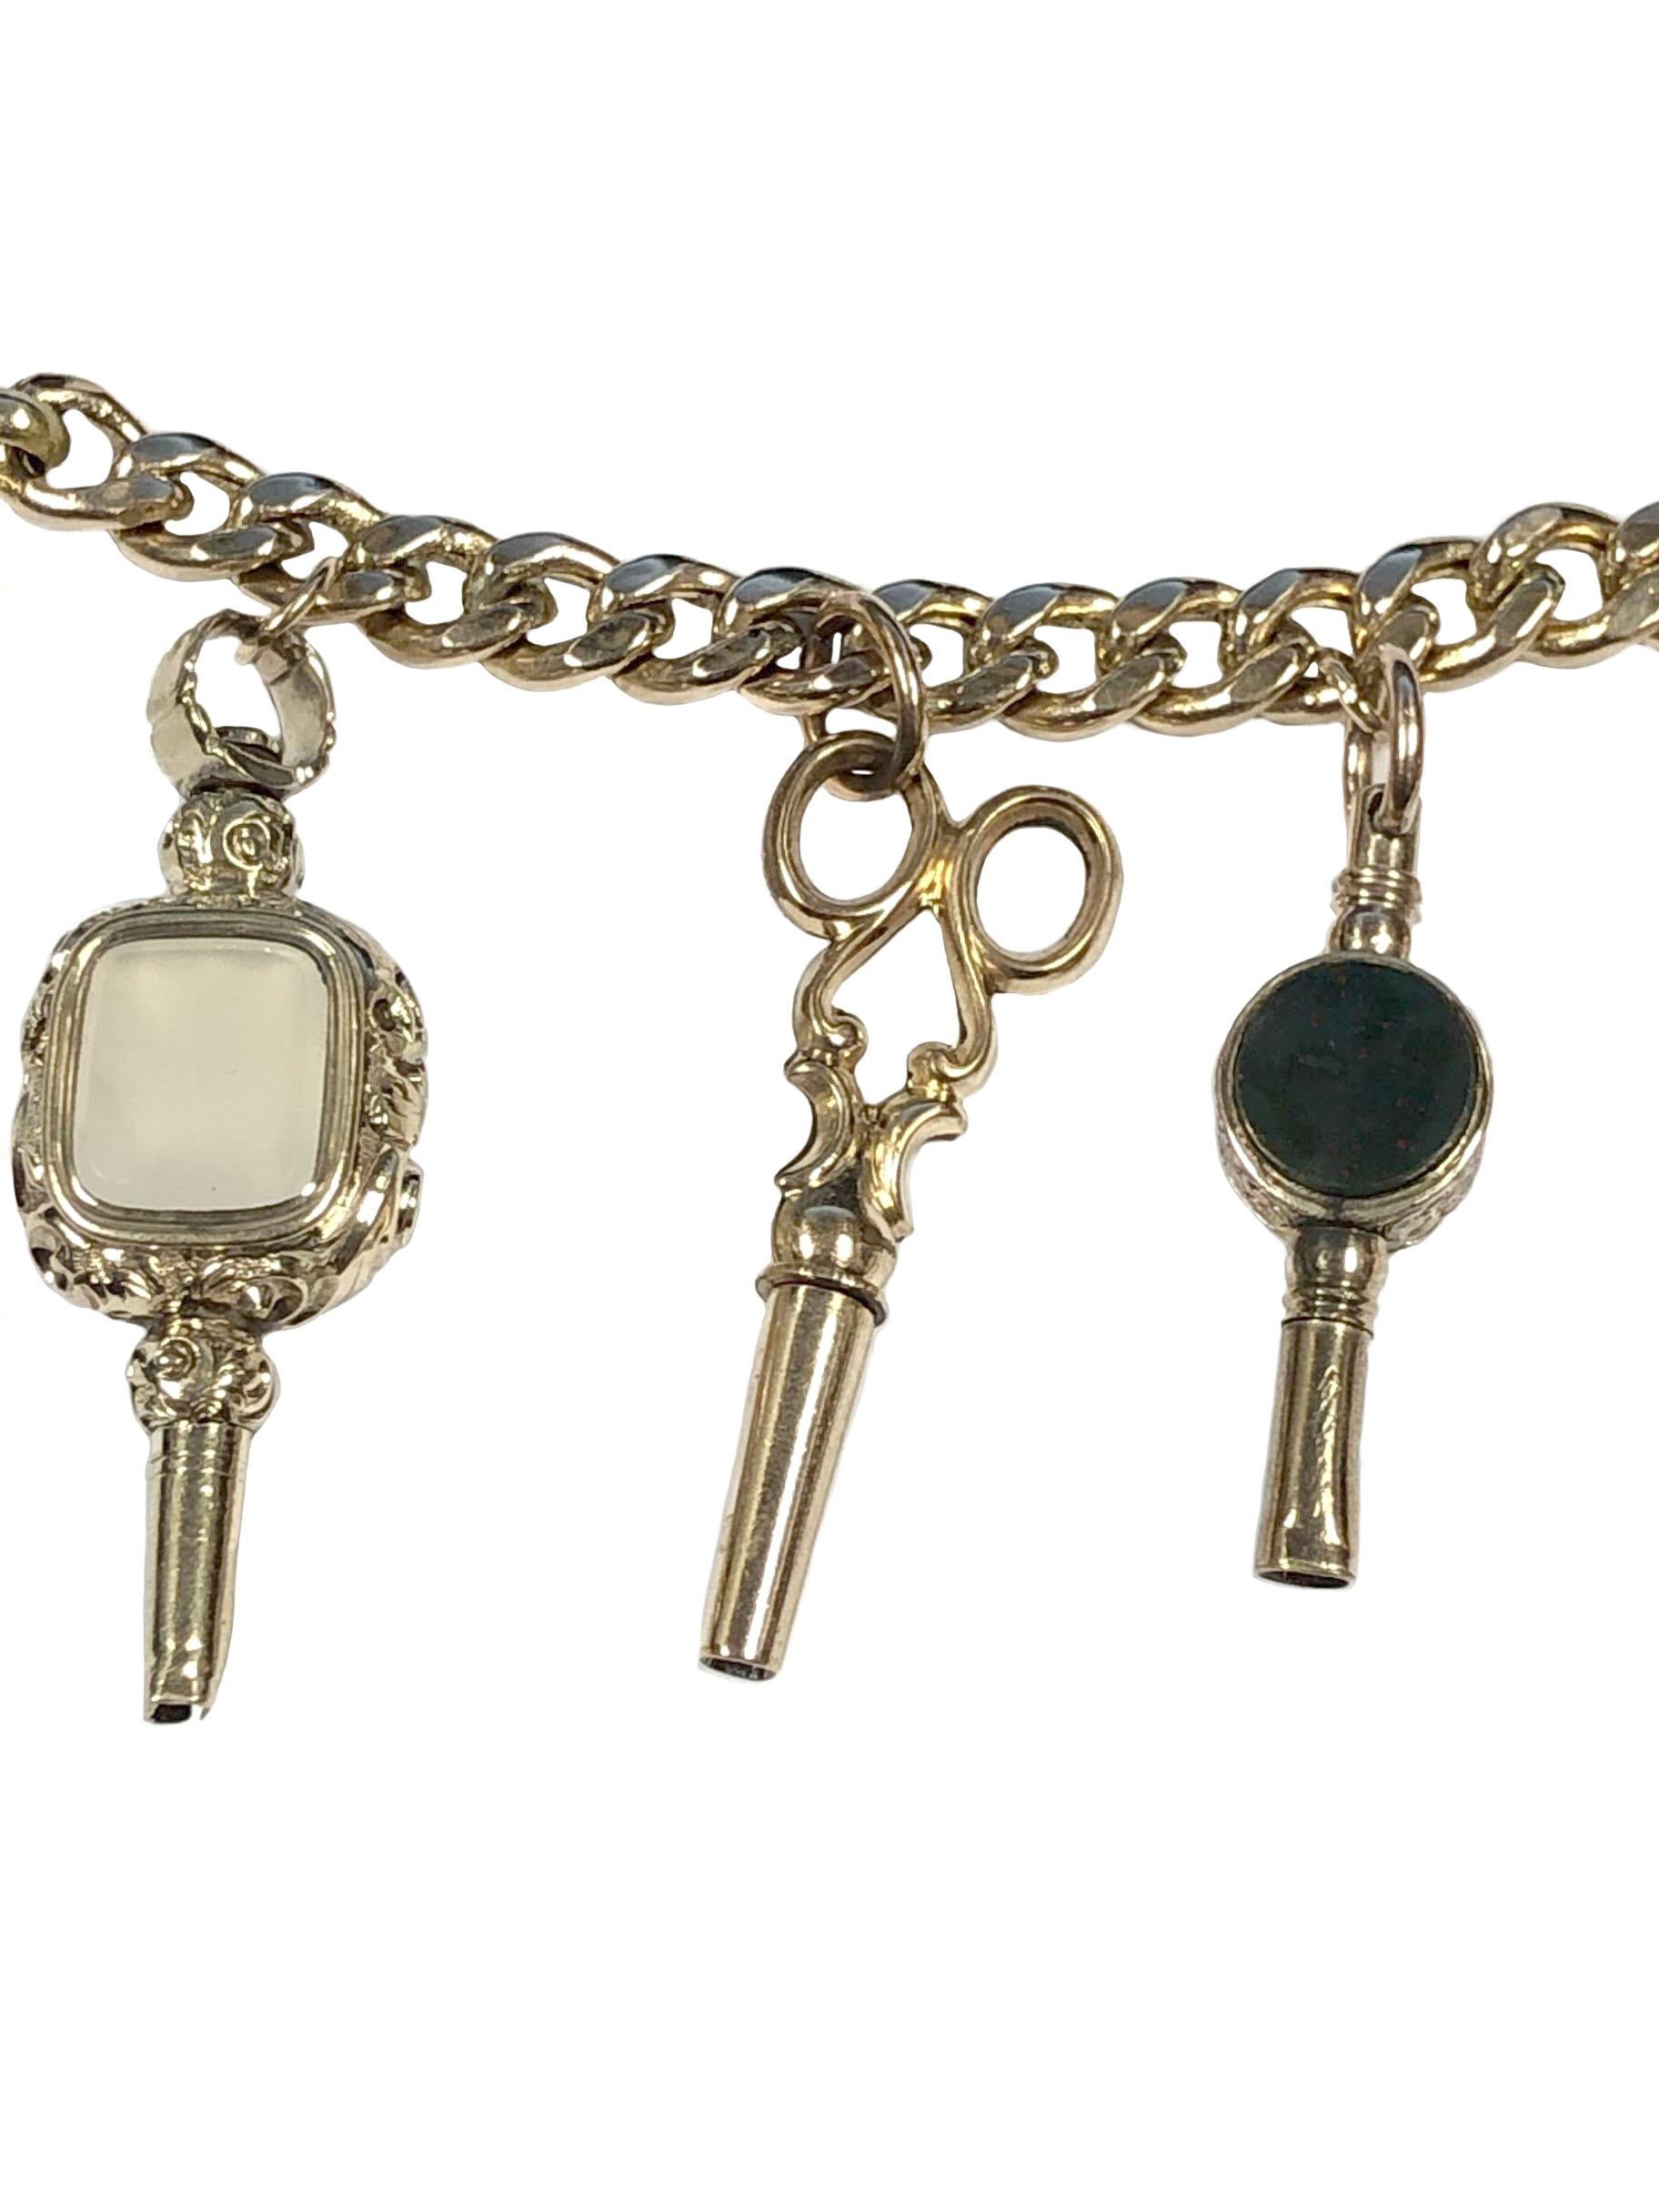 Circa 1800 bis 1860er Jahre Meistens alle Gold Uhrenschlüssel, von einem 14k Gelbgold Link Armband mit einer ungewöhnlichen Clutching Hand Verschluss befestigt. einige Schlüssel mit Achat und anderen Steinen besetzt. Die meisten Keys messen